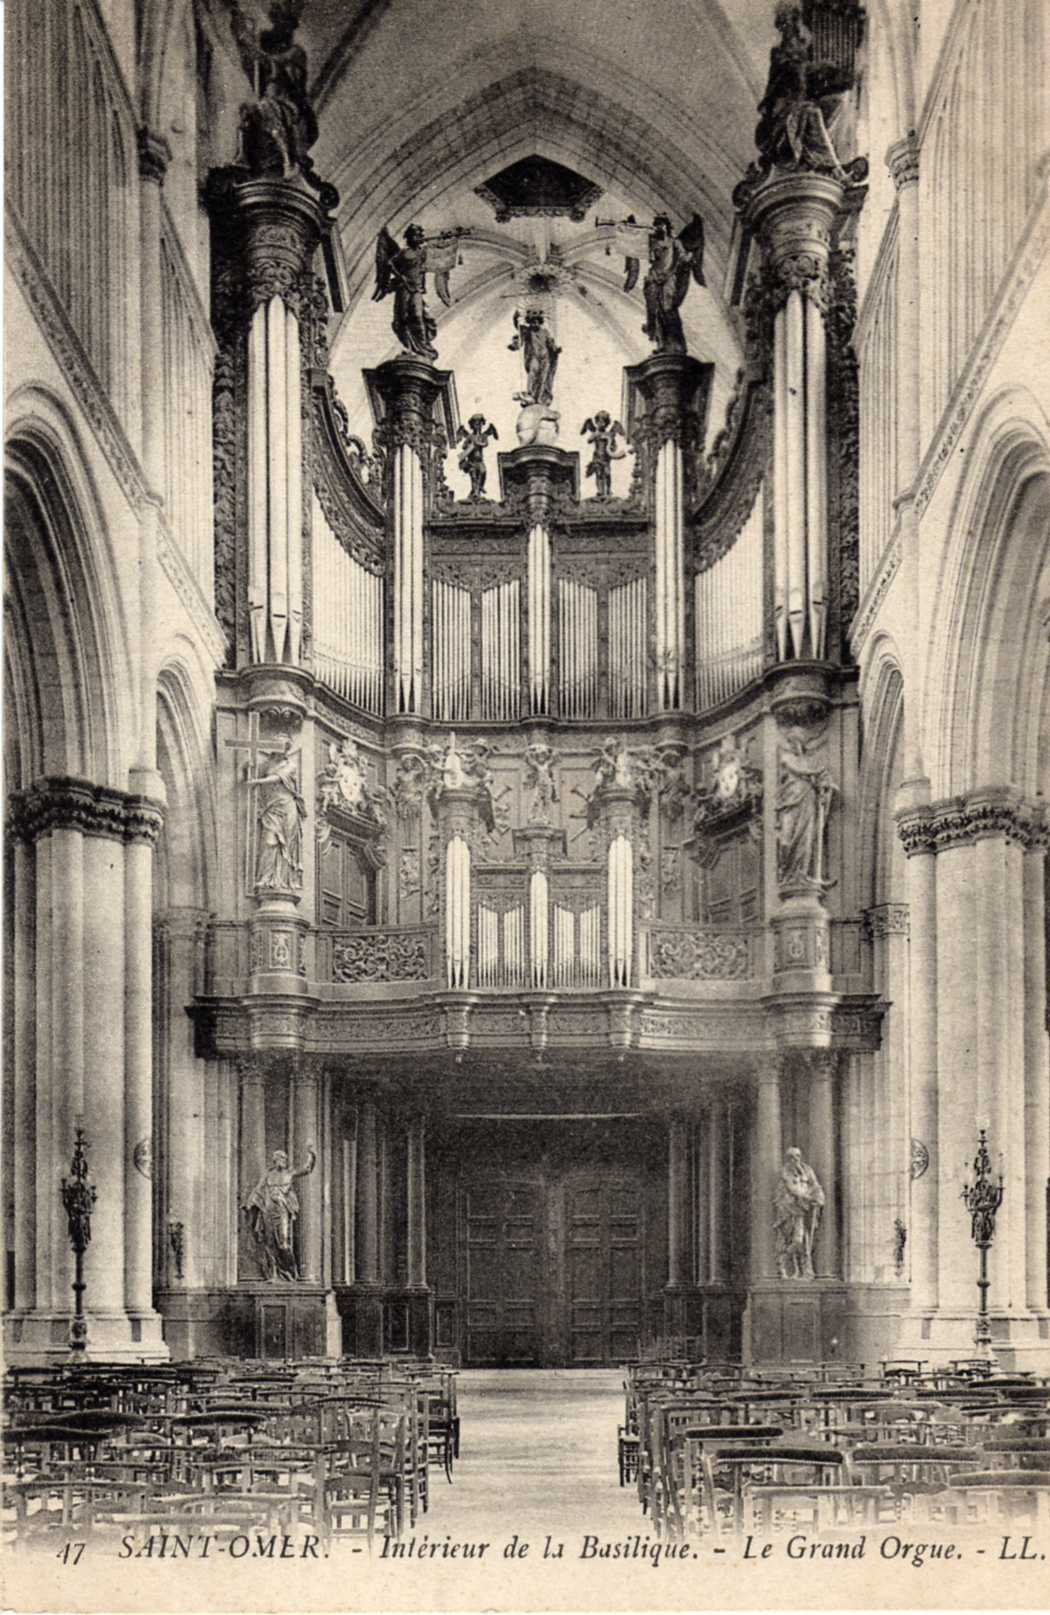 Cet orgue fut fabriqué en 1717 par les frères Piette menuisiers à St Omer, c'est le plus beau Buffet d'orgue de style Baroque , il fut rénové en 1855 par Cavaillé-Coll .